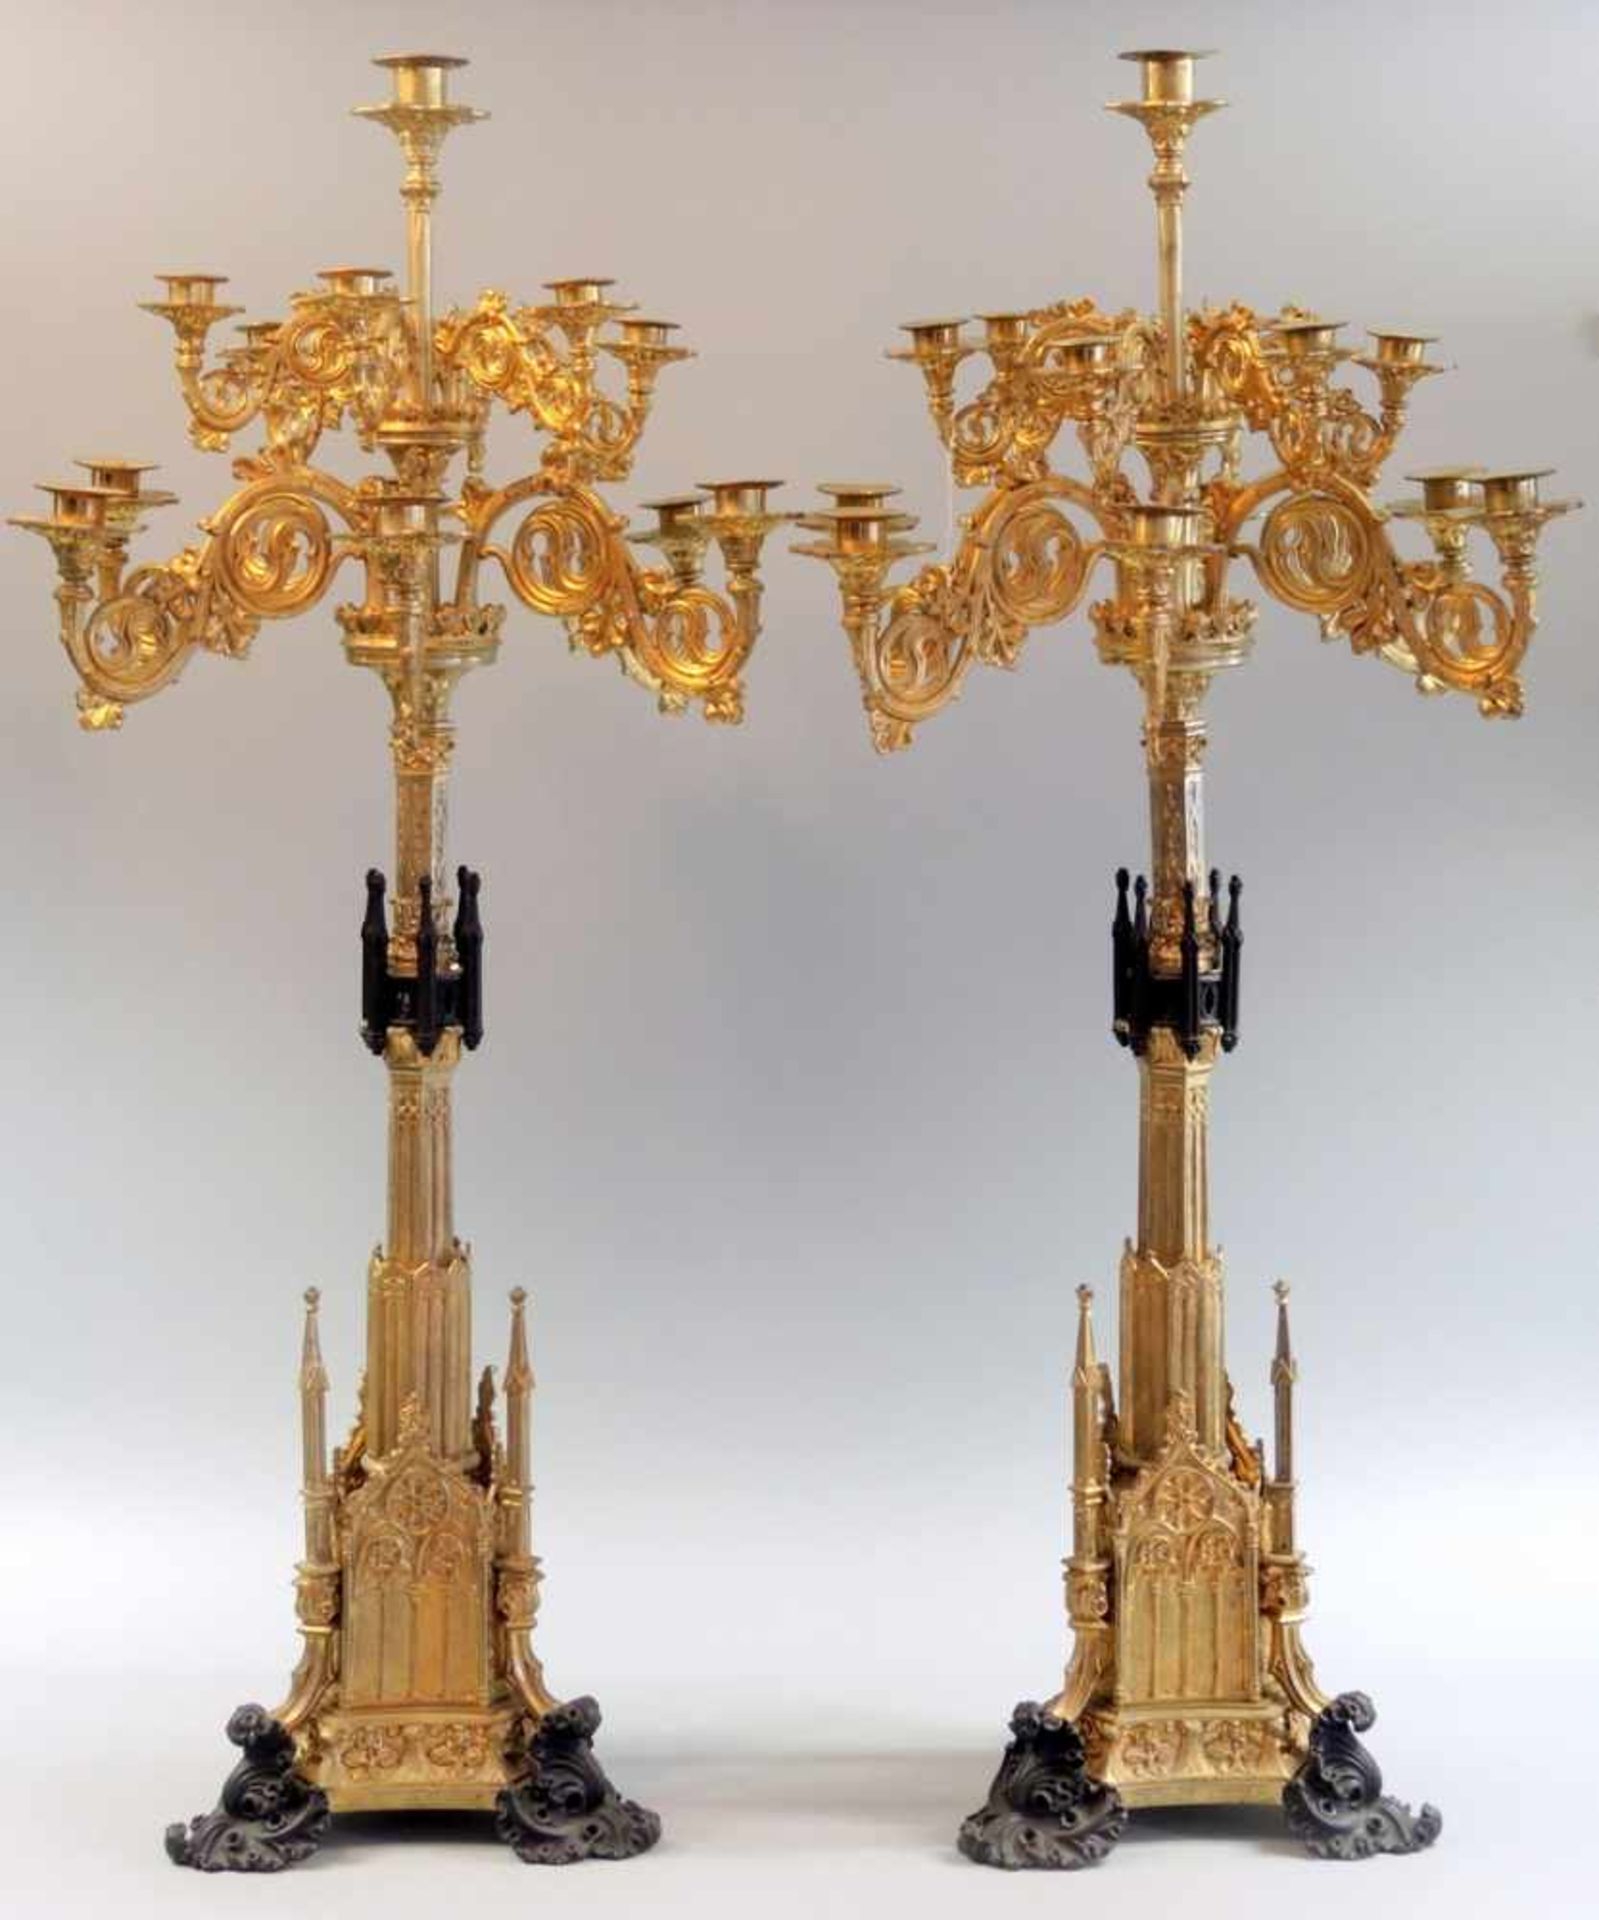 Paar Monumentalische Leuchter Bronze, feuervergoldet, Füße und Türme mittig naturbelassen. 13-